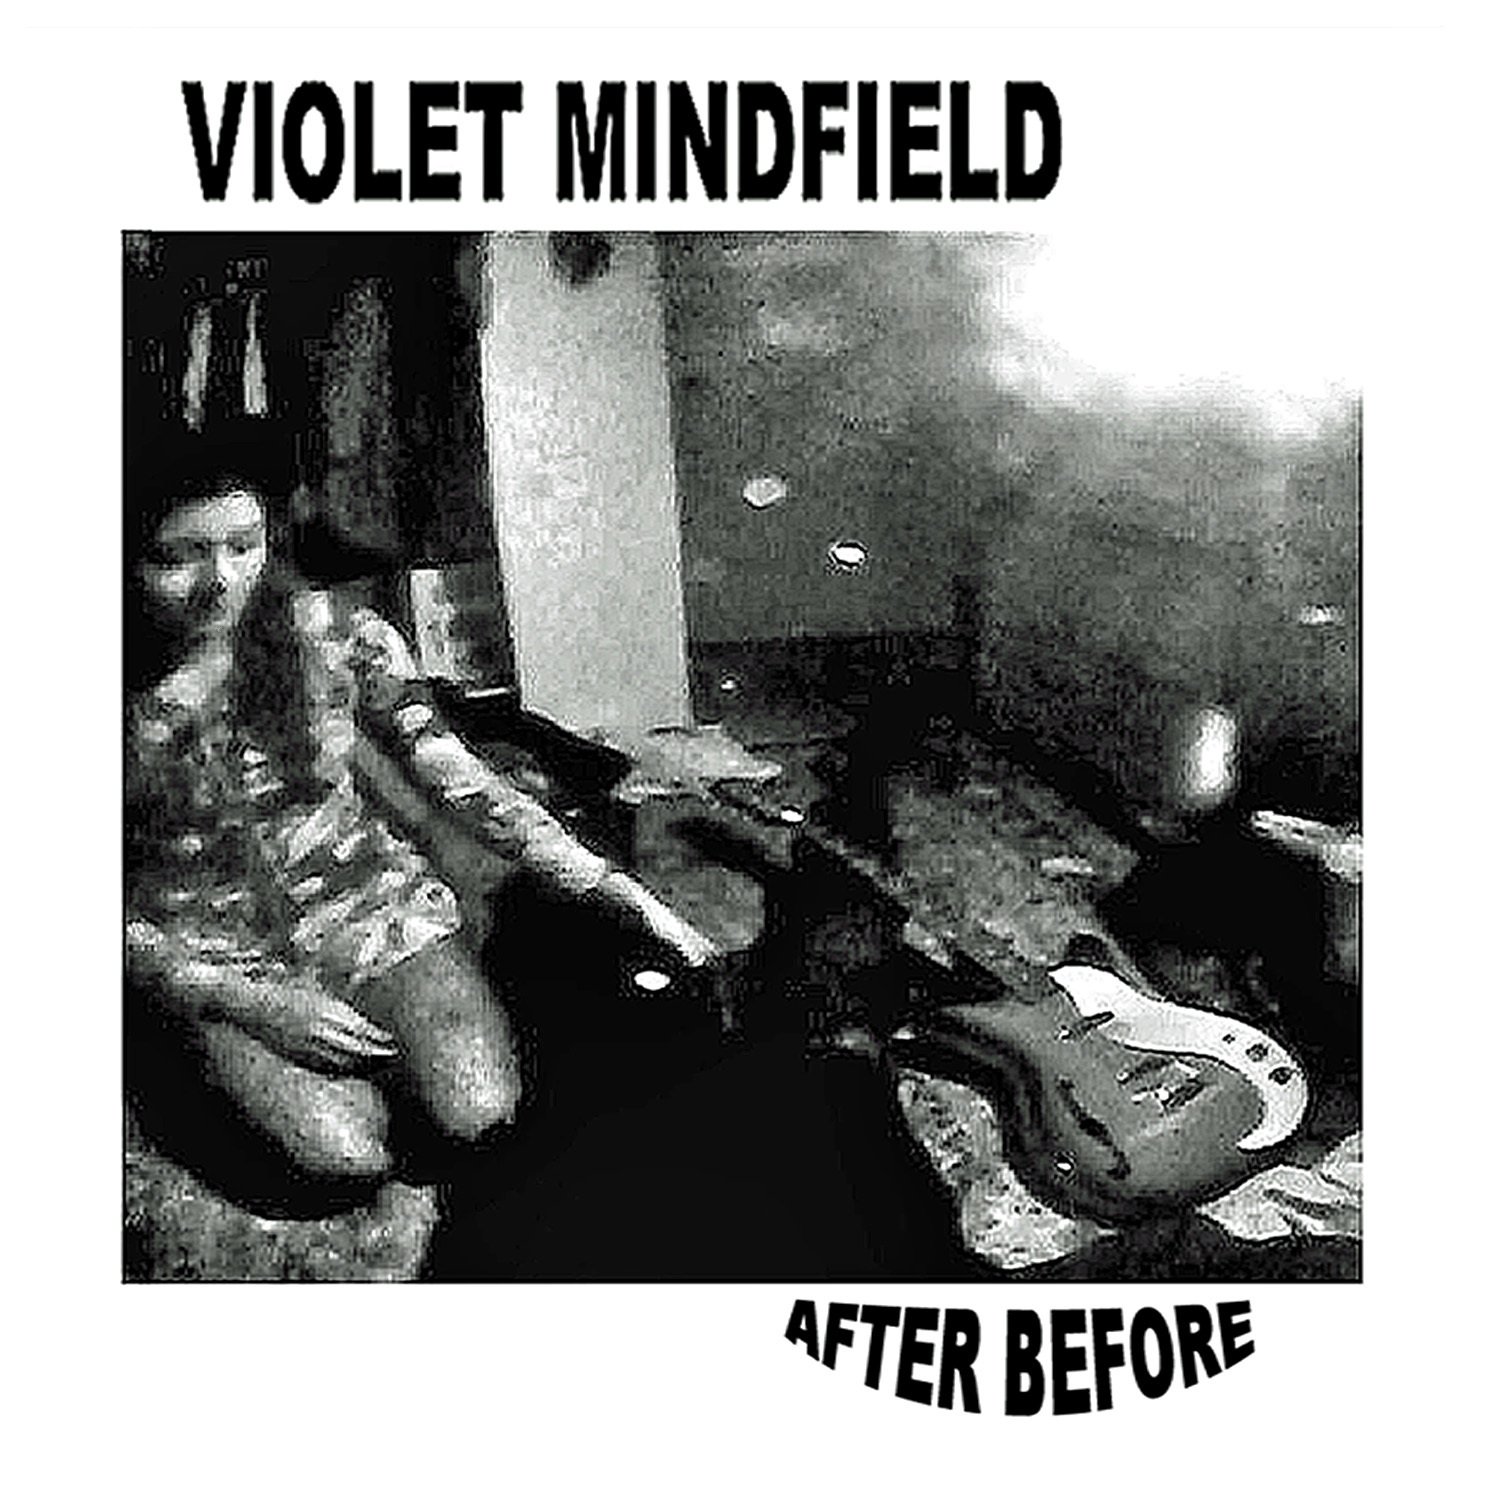 The Violet Mindfield  The Violet Mindfield